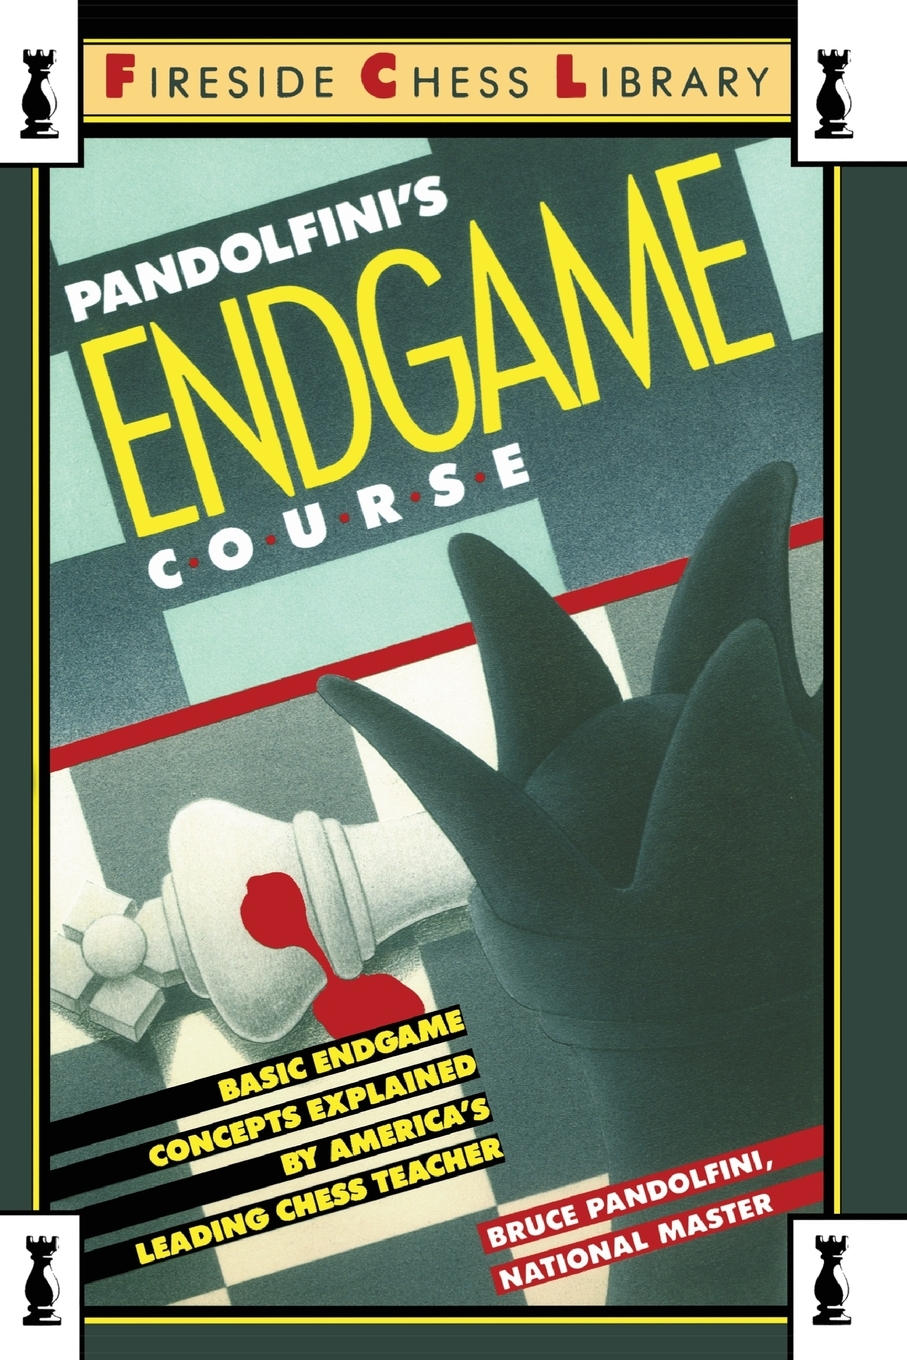 预售按需印刷潘多尔菲尼的终极课程：美国顶尖国际象棋老师讲解的终极基本概念 Pandolfini's Endgame Course